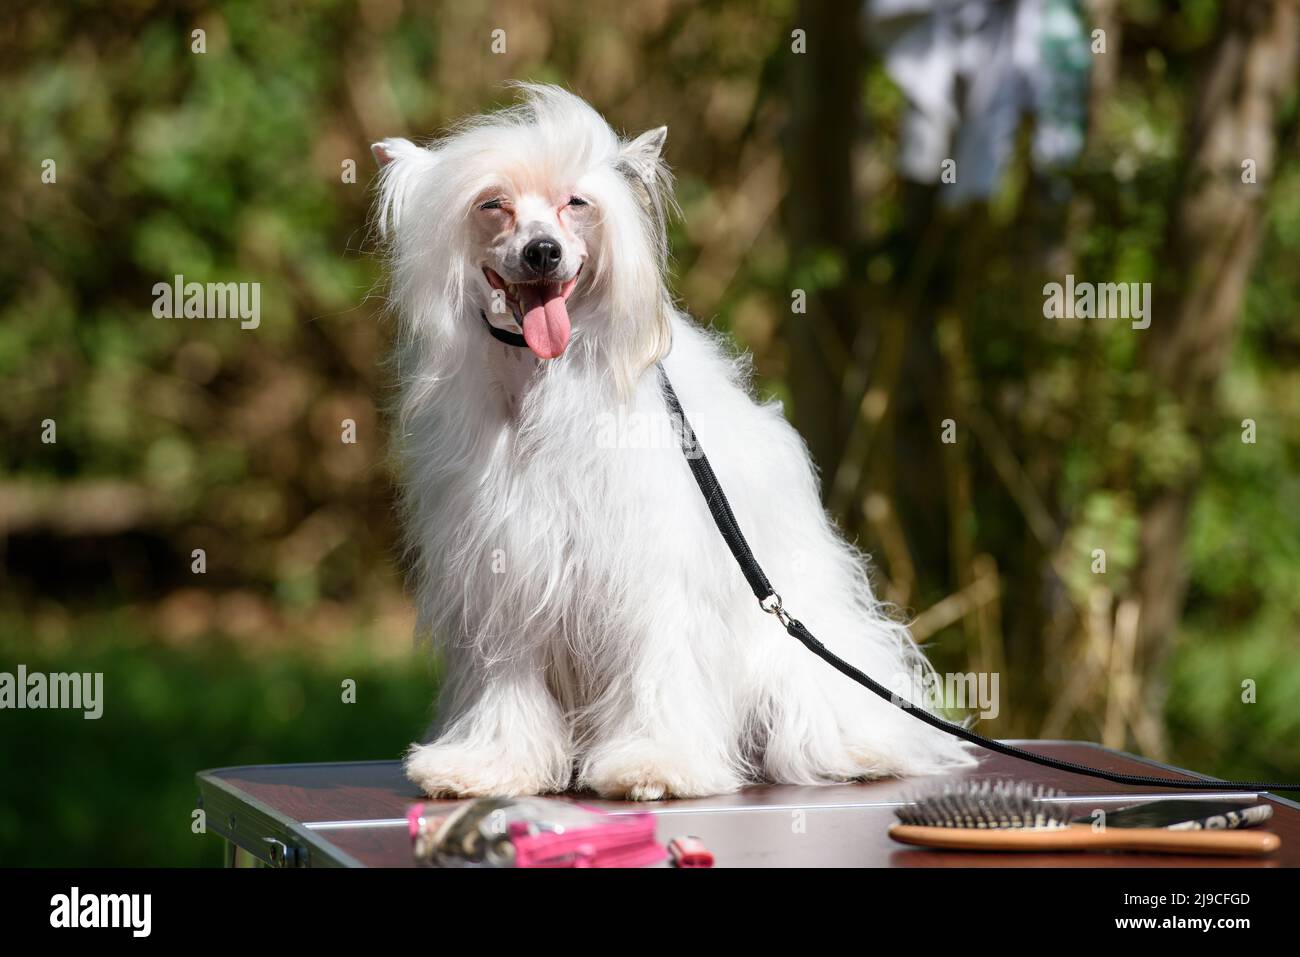 Le chien blanc de la race chinoise à crête est resté hors de sa langue et se trouve à droite. Le chien est assis sur une table dans le parc. Gros plan. Banque D'Images